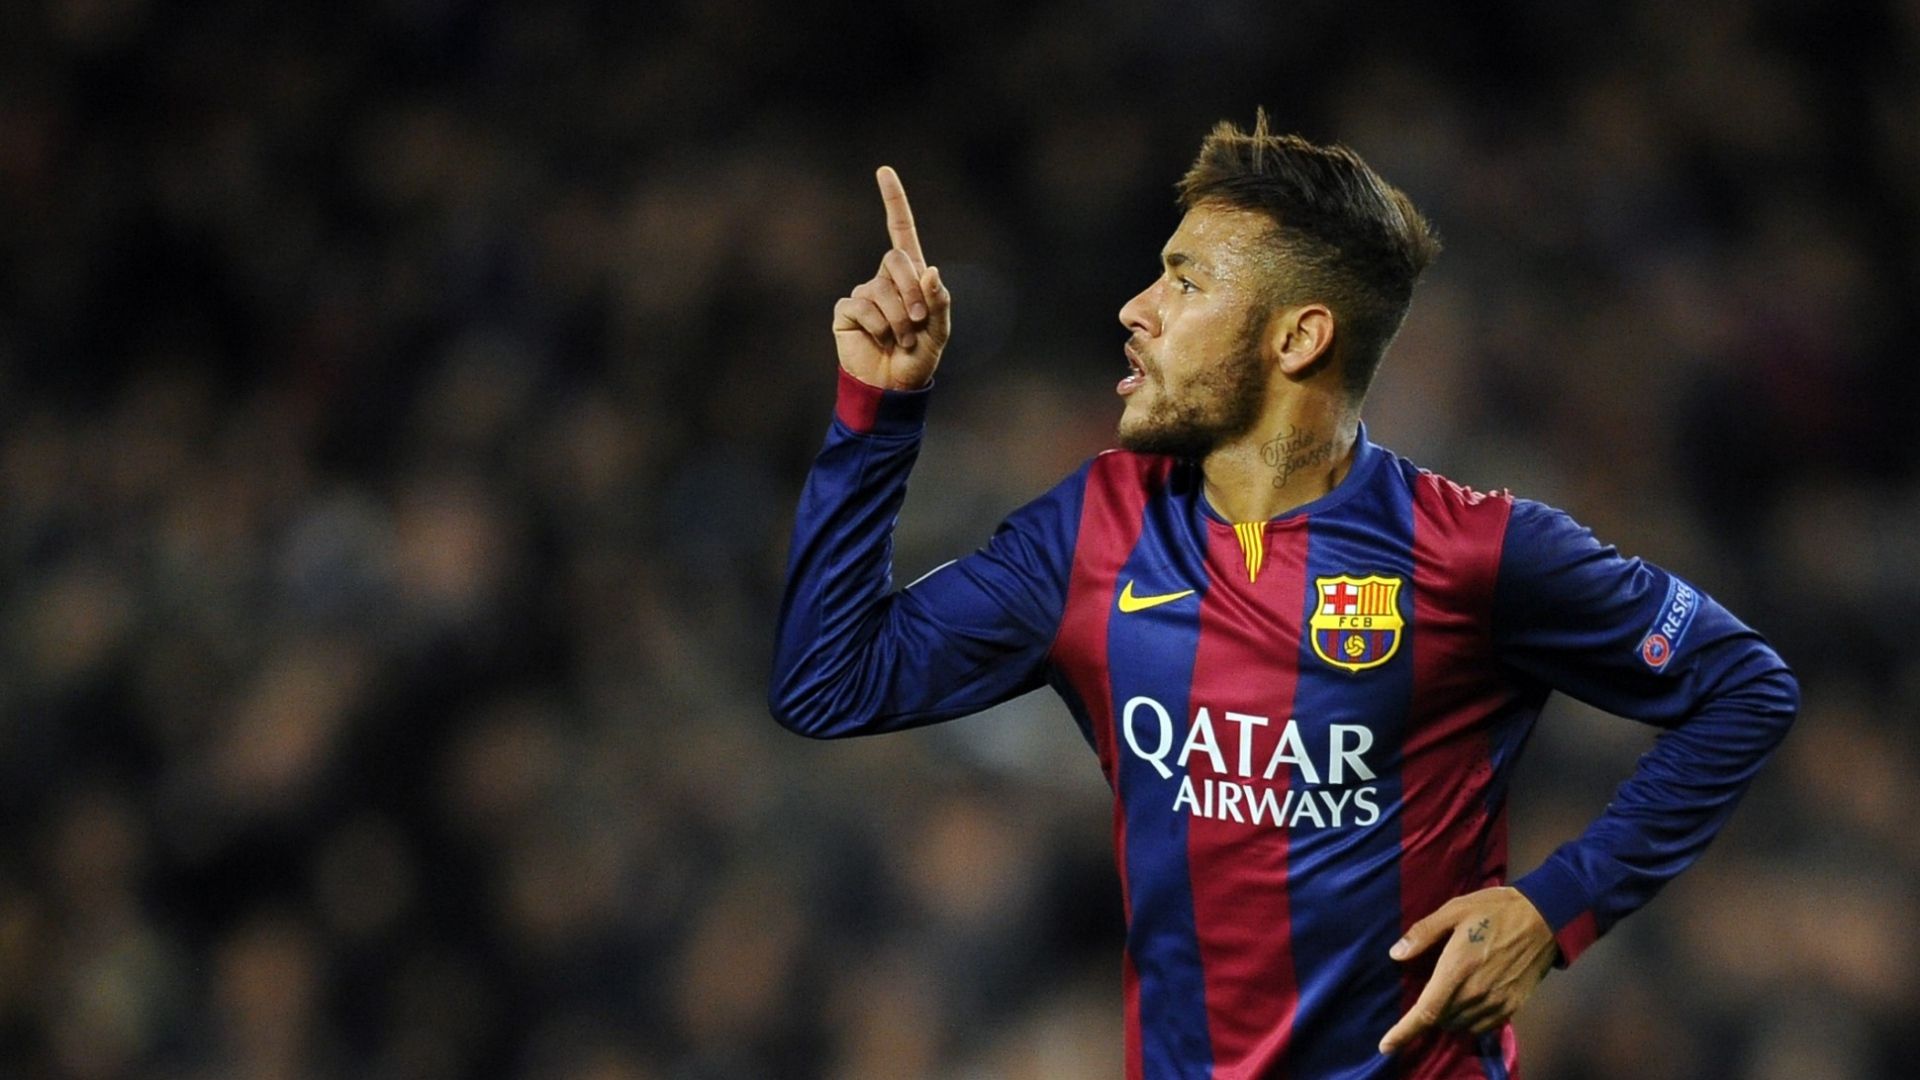 Desktop Neymar Football Soccer Player Hd Free Raise Finger Mobile Bakground Download Pic